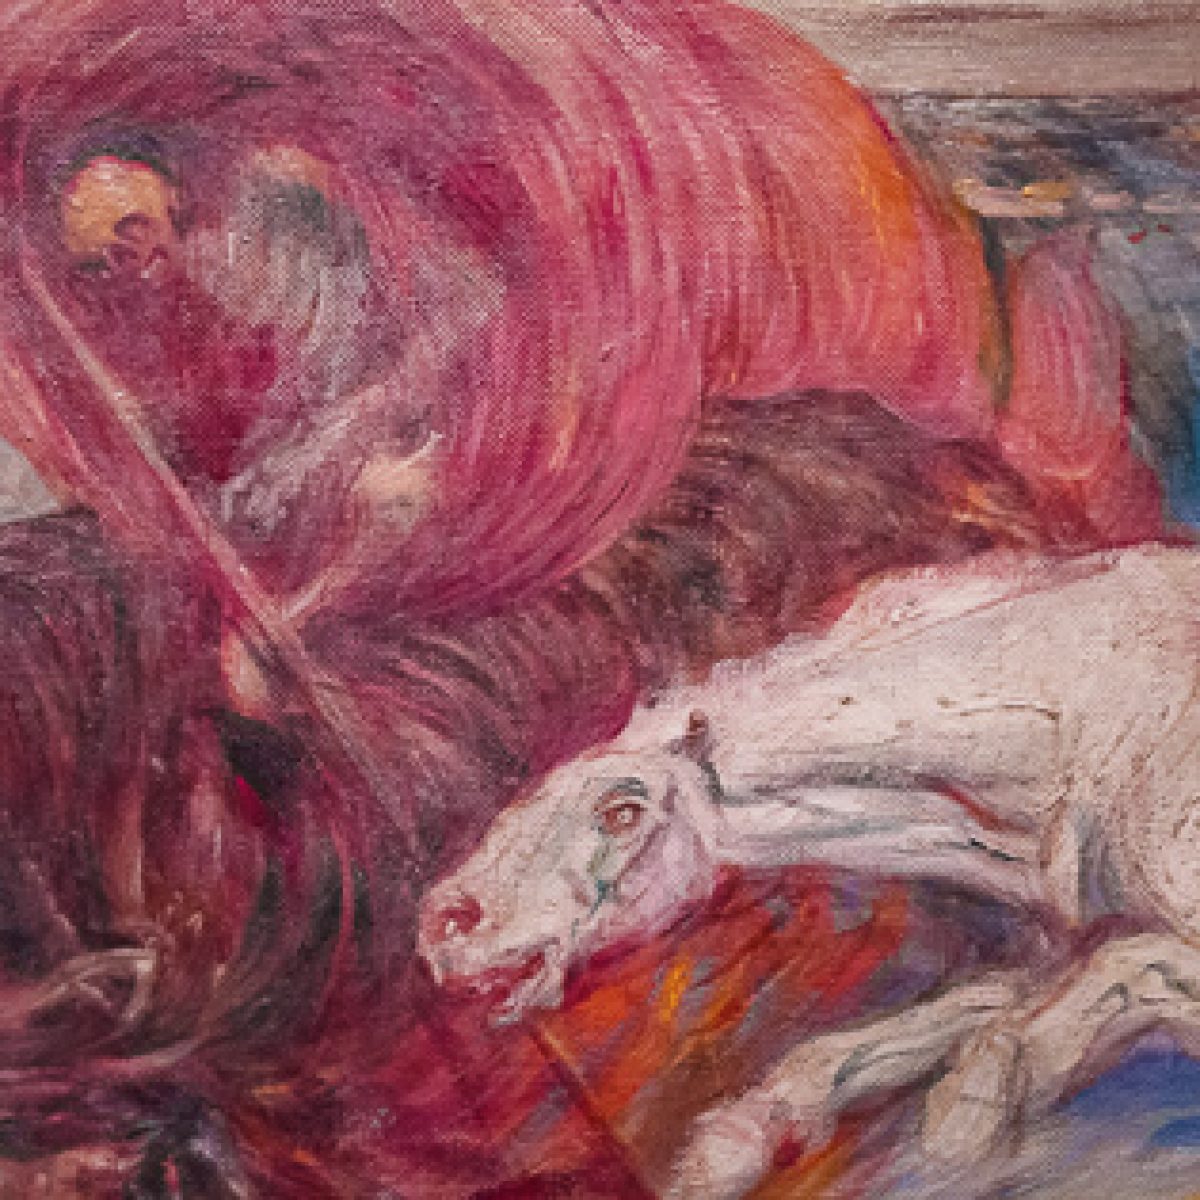 Four Horsemen of the Apocalypse at Art Institute Chicago